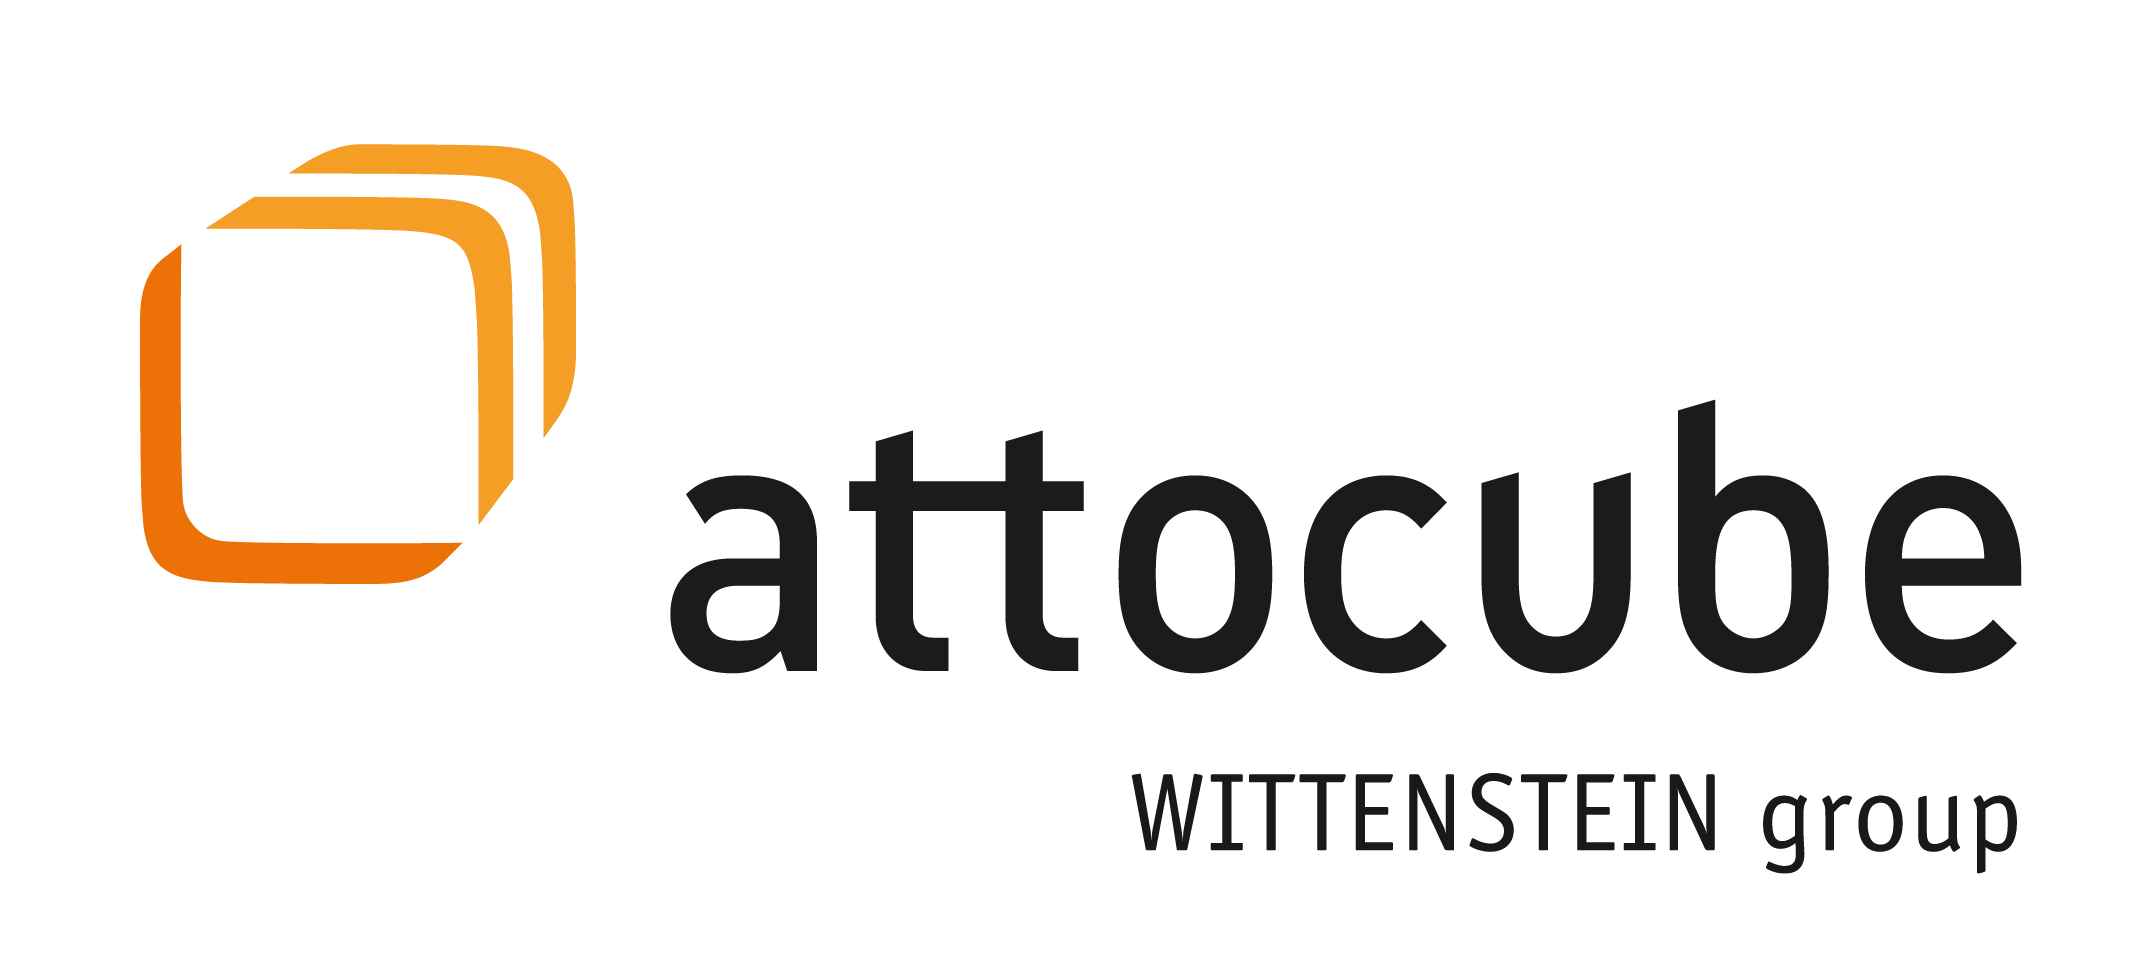 Attocube WSE Group Logo